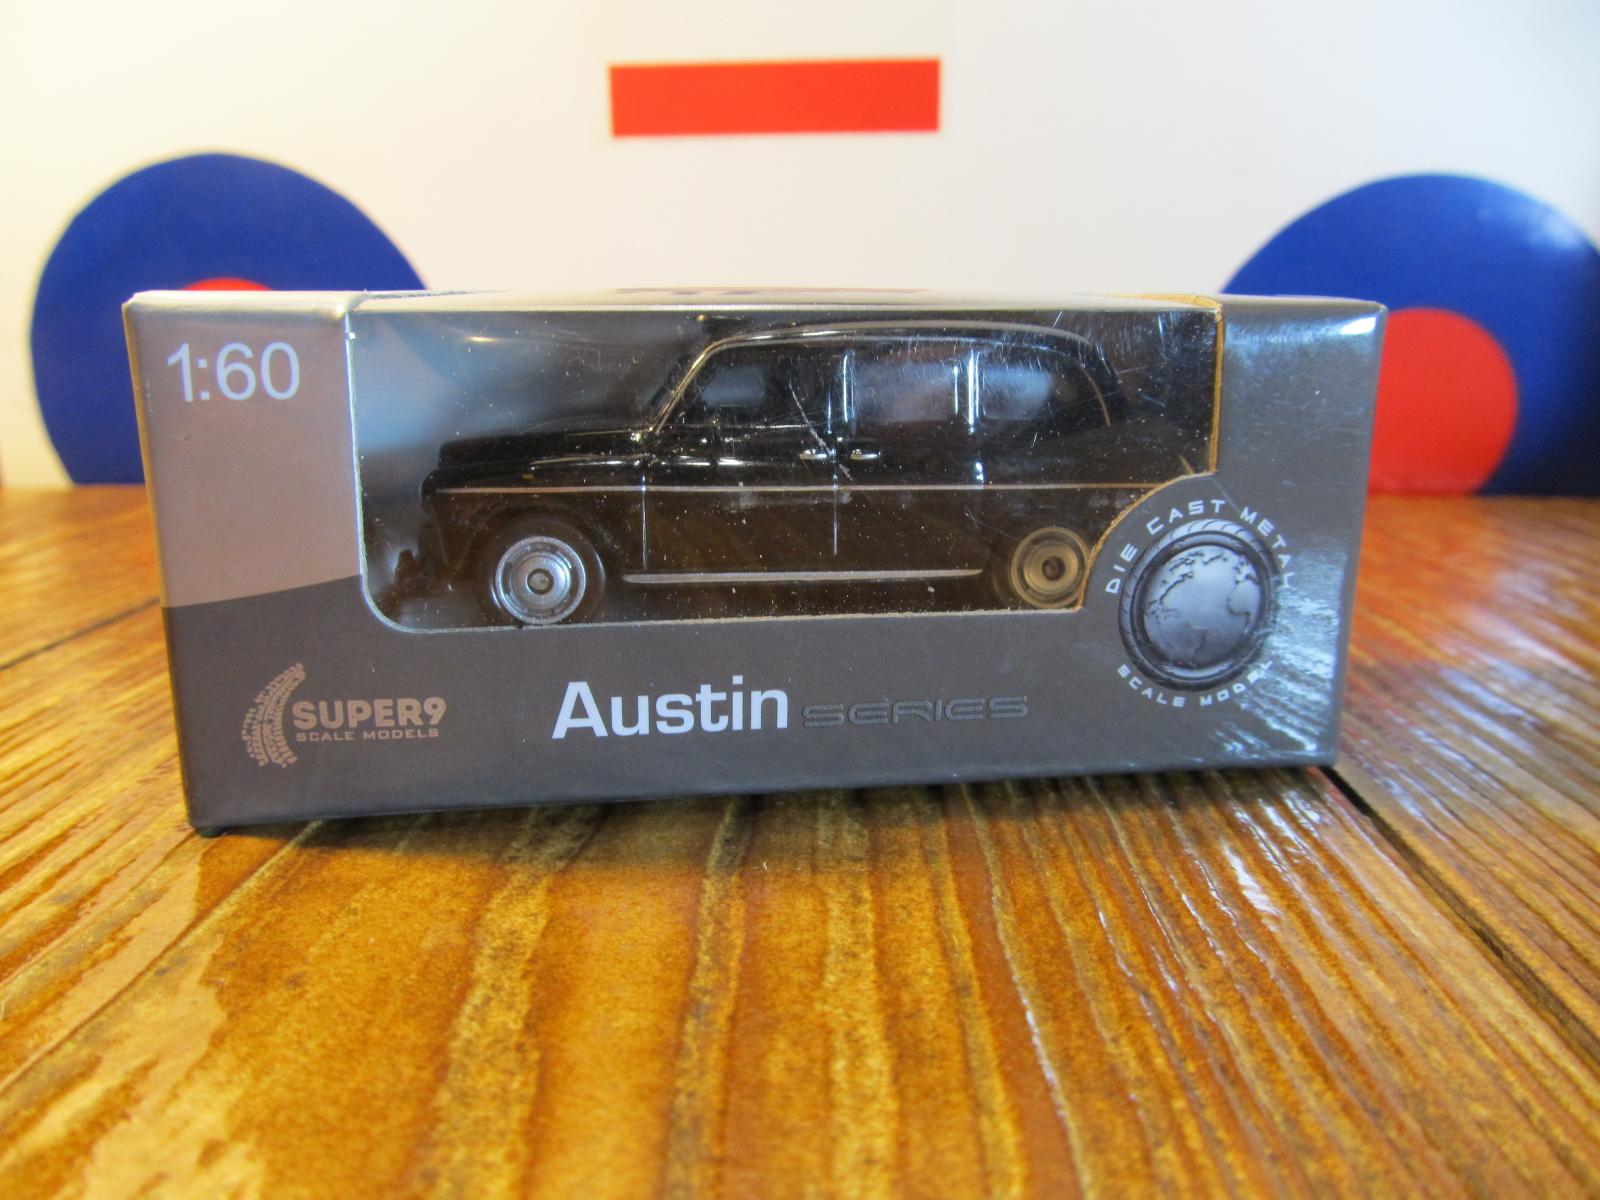 Austin - Modely automobilů